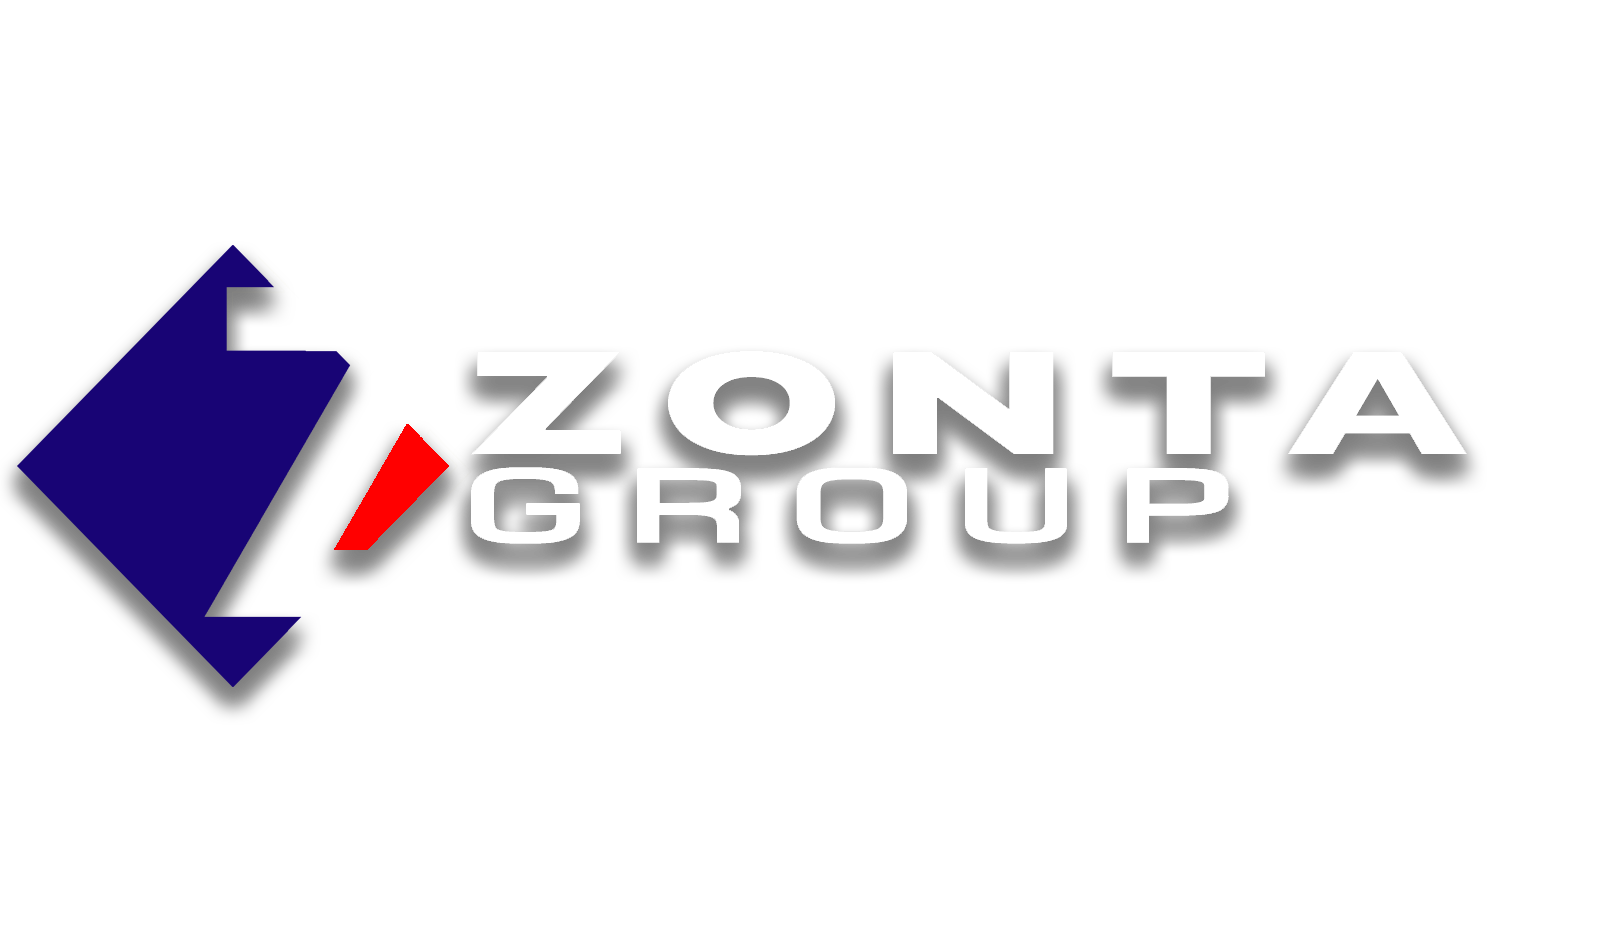 Zonta Group